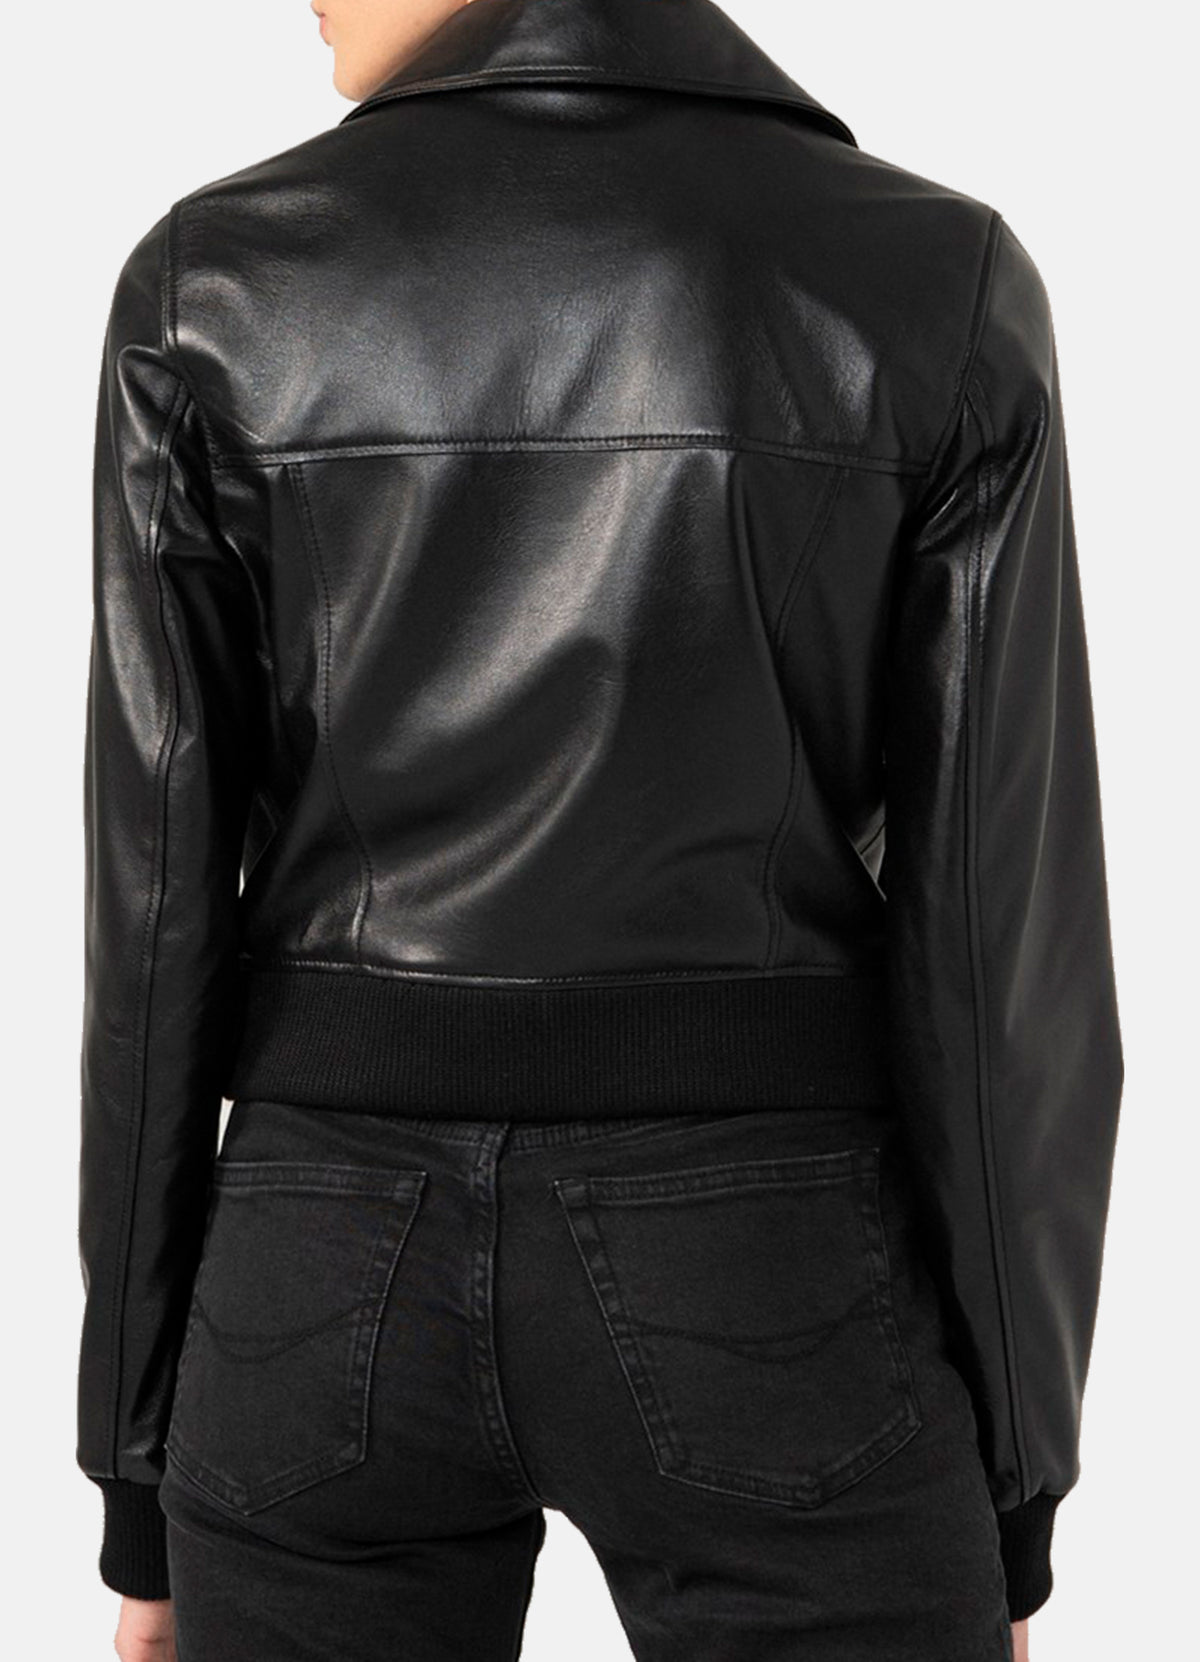 Womens Shiny Black Biker Leather Jacket | Elite Jacket